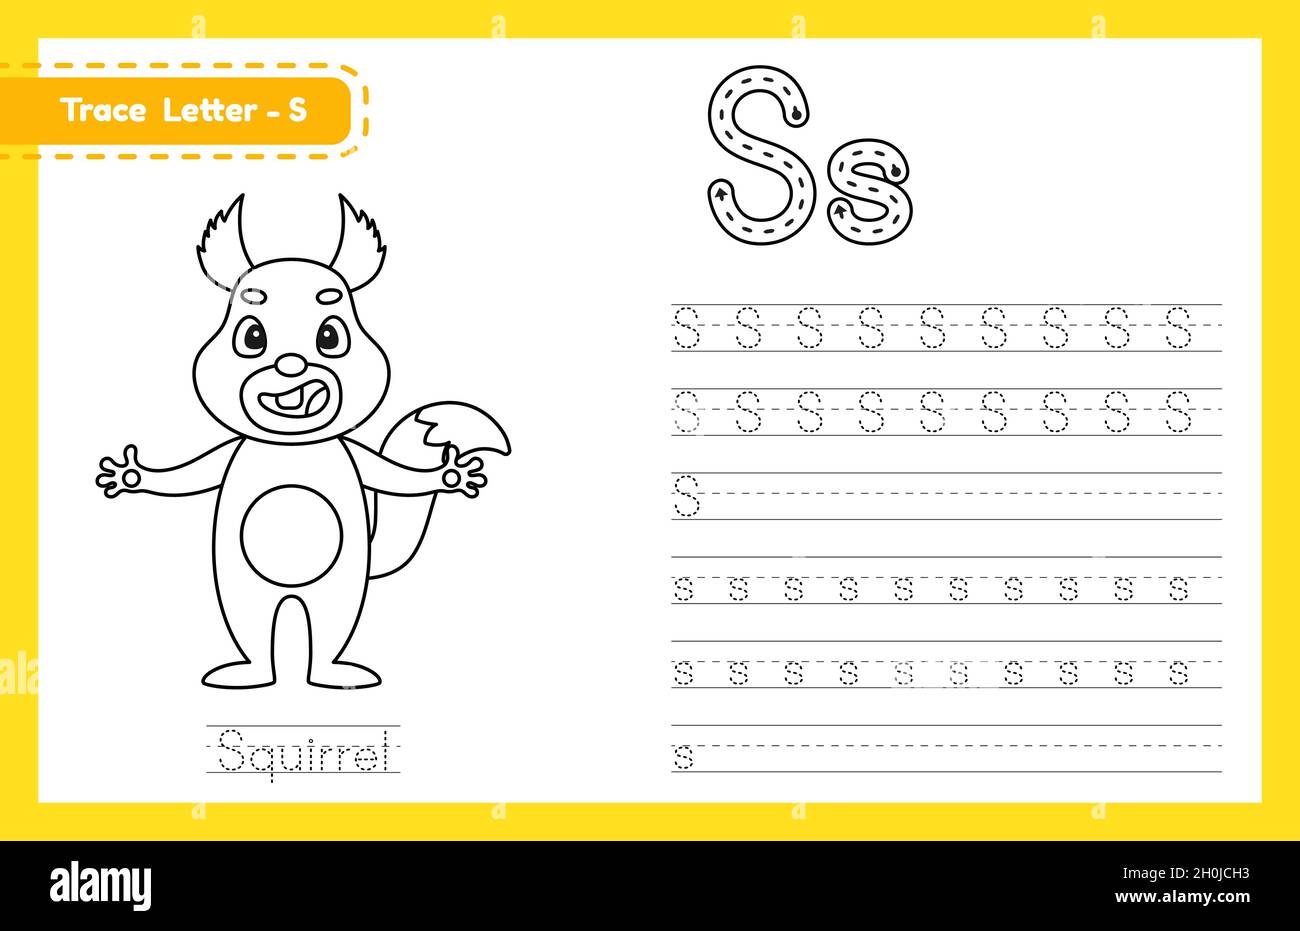 Tracciare la lettera S maiuscola e minuscola. Foglio di lavoro di pratica  di calcolo dell'alfabeto per i bambini che imparano l'inglese con animale  carino dei cartoni animati. Boo da colorare Immagine e